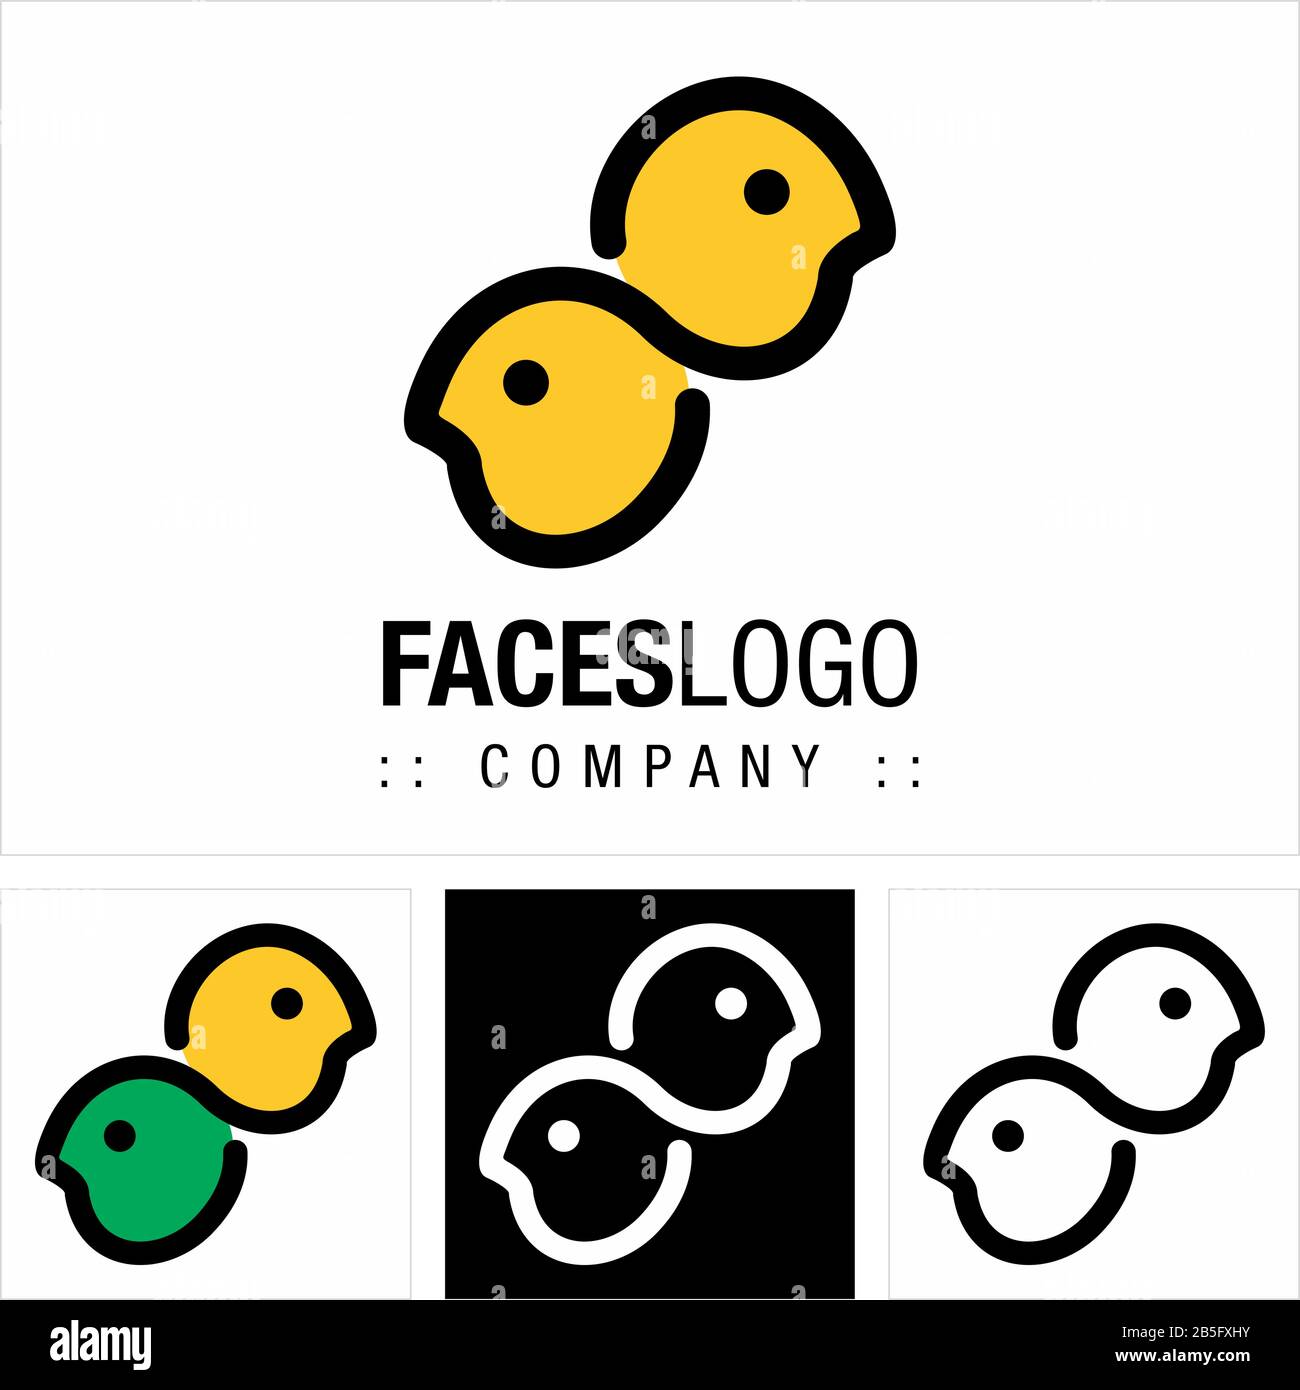 Logo (Logotipo) Di Vector Symbol Company Faces (Profilo). Persone, Persone, Testa, L'Illustrazione Dell'Icona Infinito. Design Moderno Ed Elegante Illustrazione Vettoriale